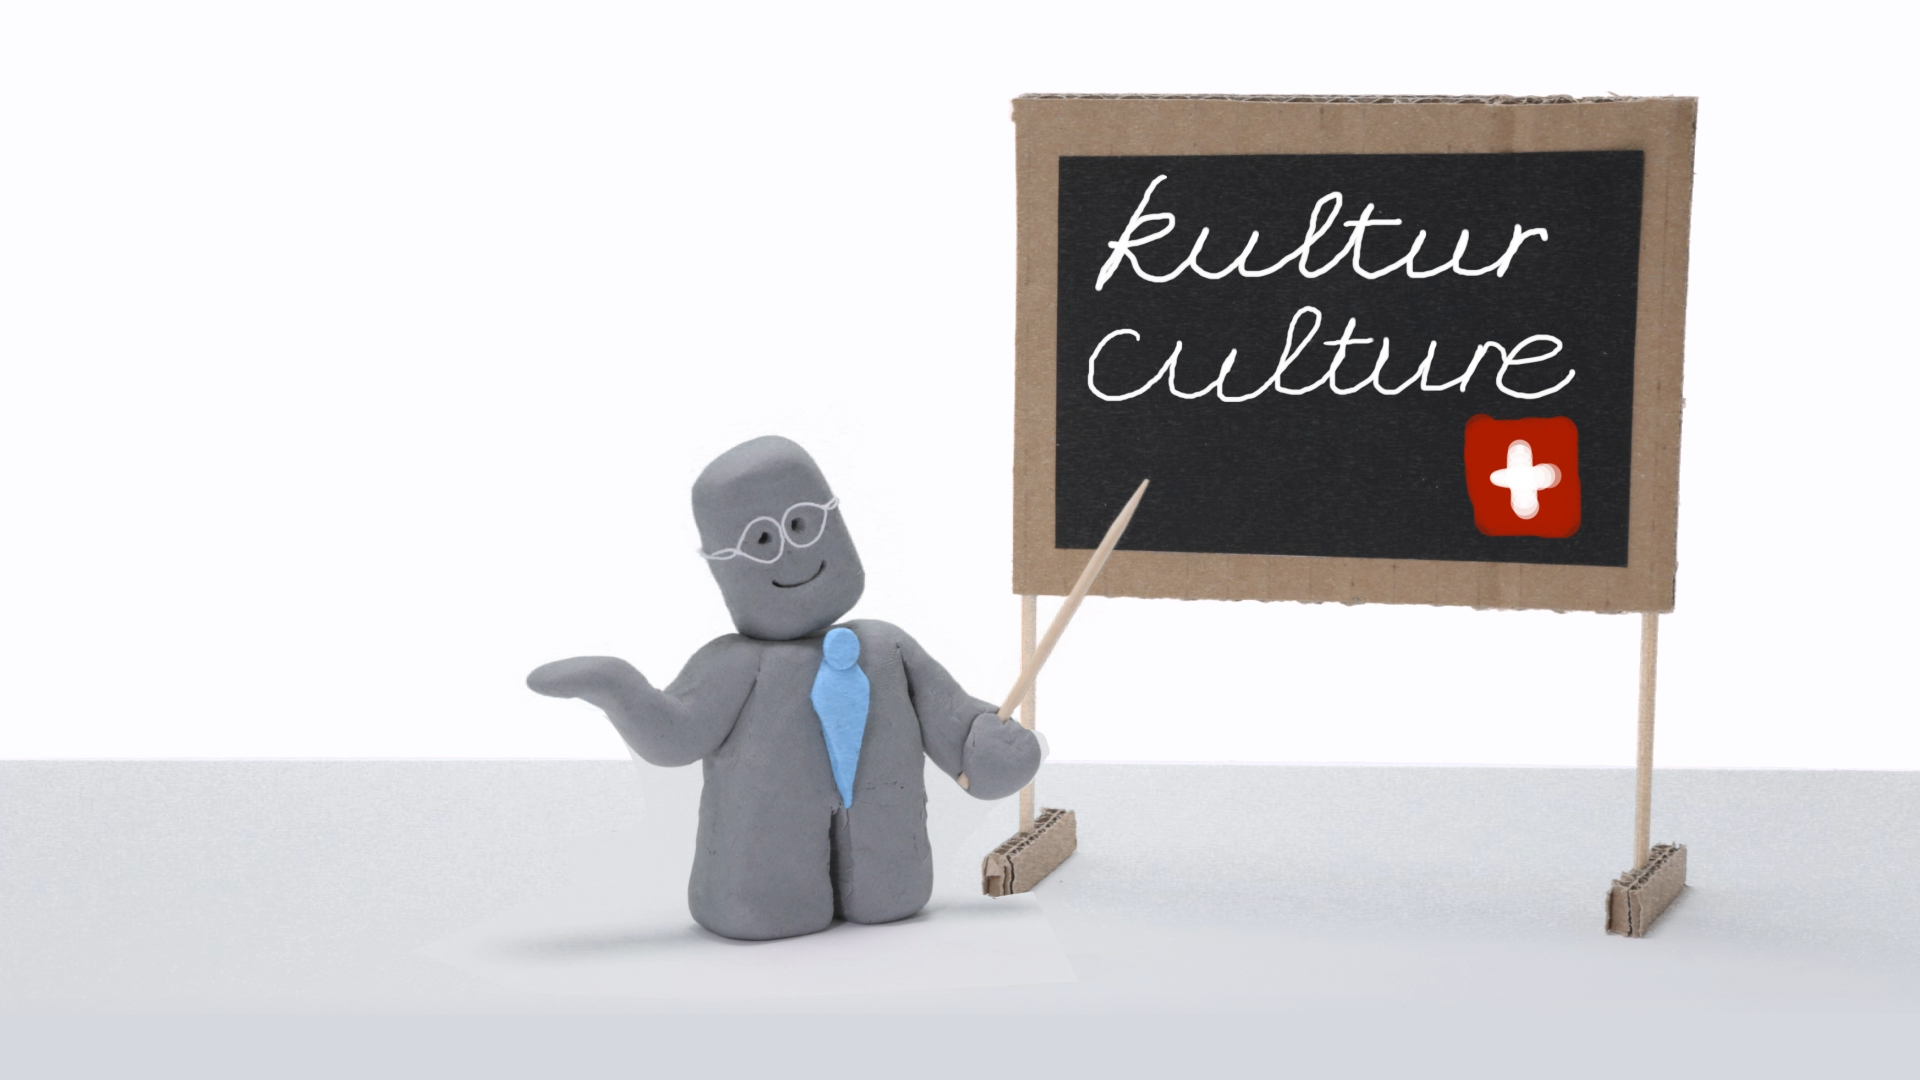 شخص بلاستيكي أمام السبورة حيث كتب «kultur/culture» أي الثقافة